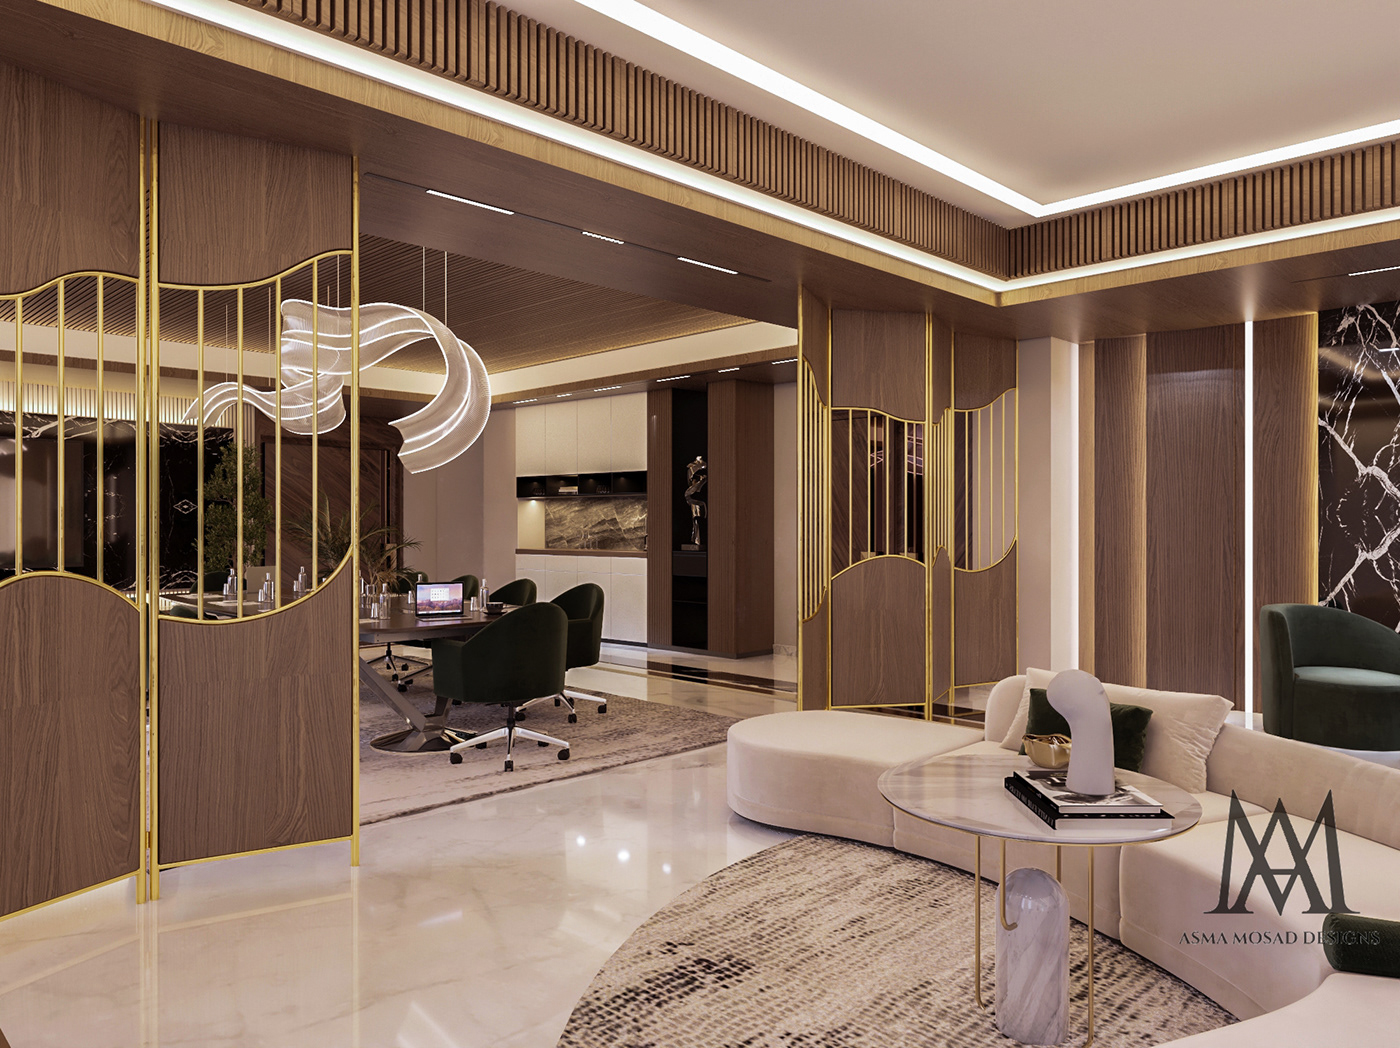 Office Office Design luxury Luxury Design modern interior design  visualization architecture Render office furniture